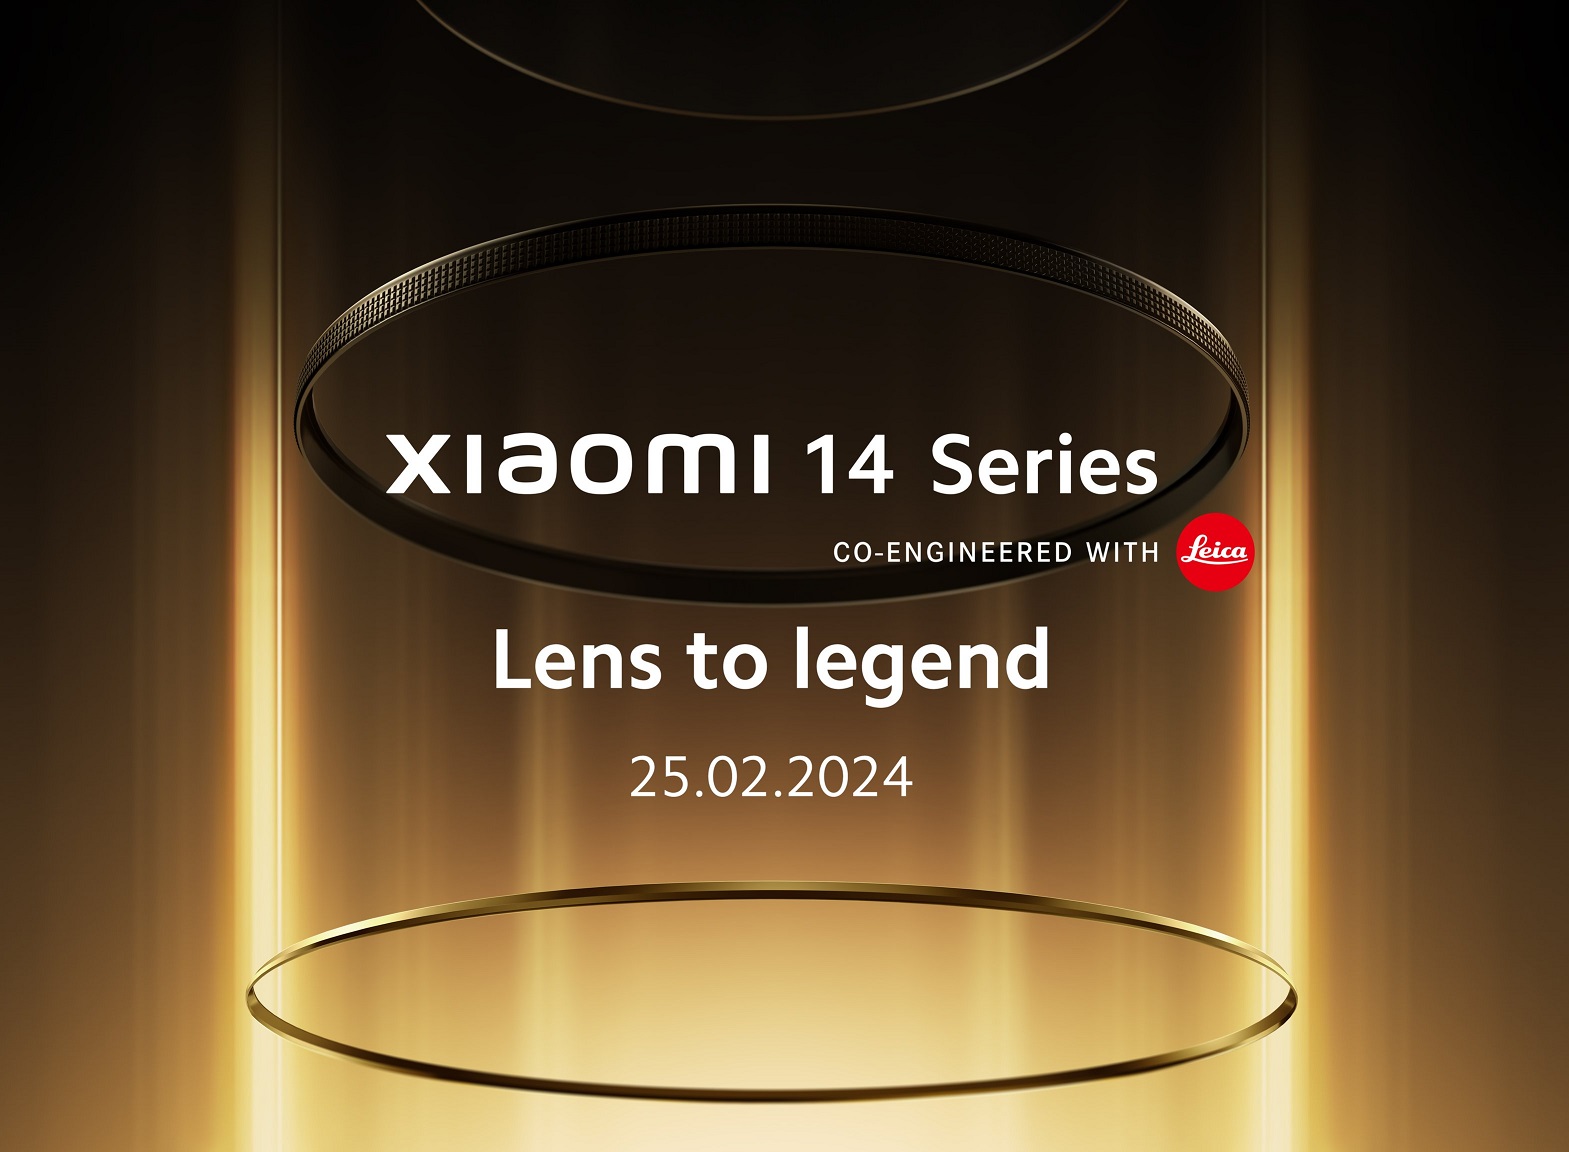 Флагманская серия Xiaomi 14 дебютирует на глобальном рынке 25 февраля